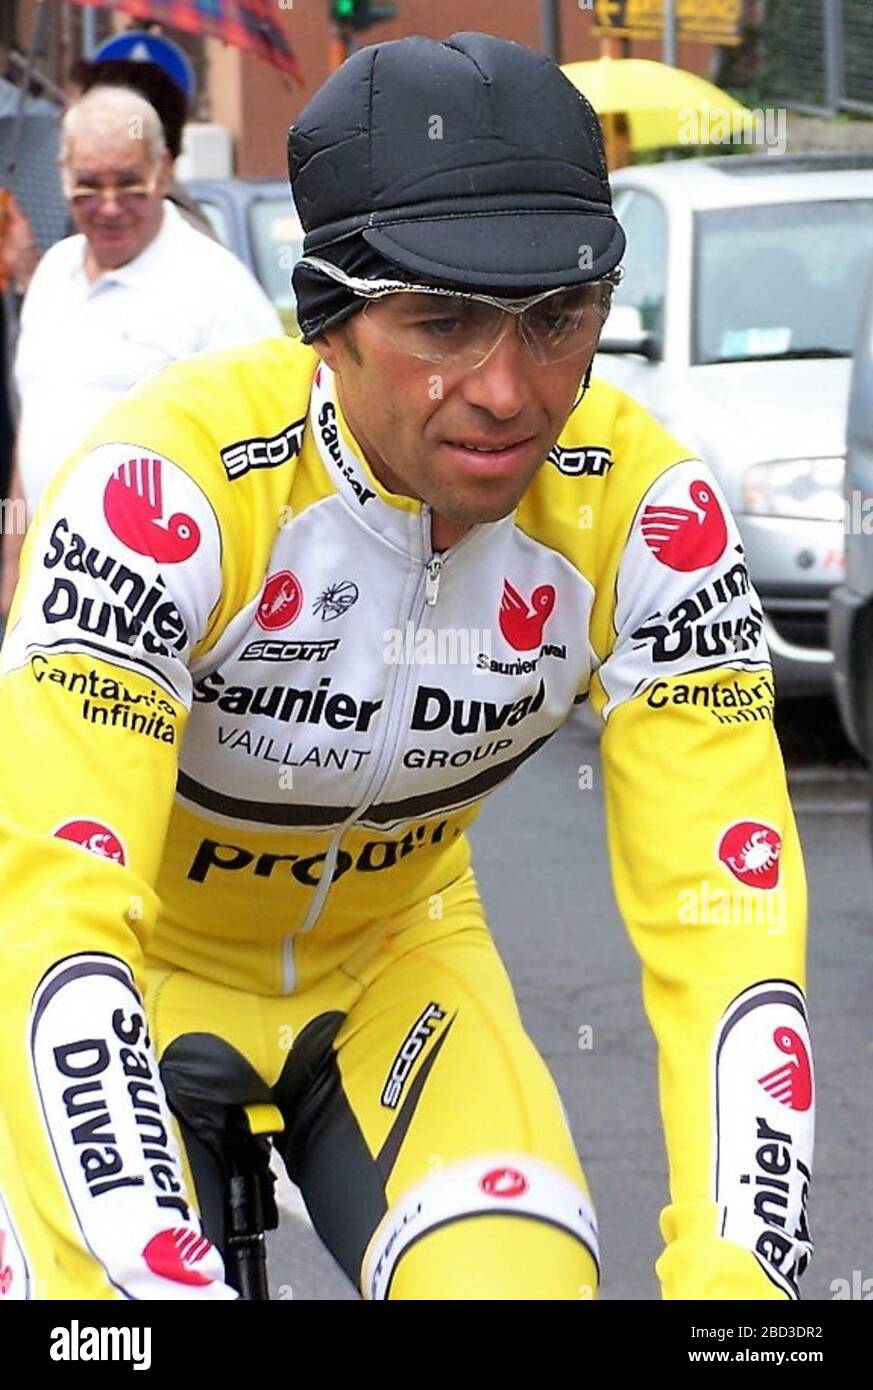 Gilberto Simoni di Saunier Duval - Prodir durante il Tour D'italie,Canté - Bergamo 192 km il 26 maggio 2007 a Canté- Foto Laurent Lairys / DPPI Foto Stock